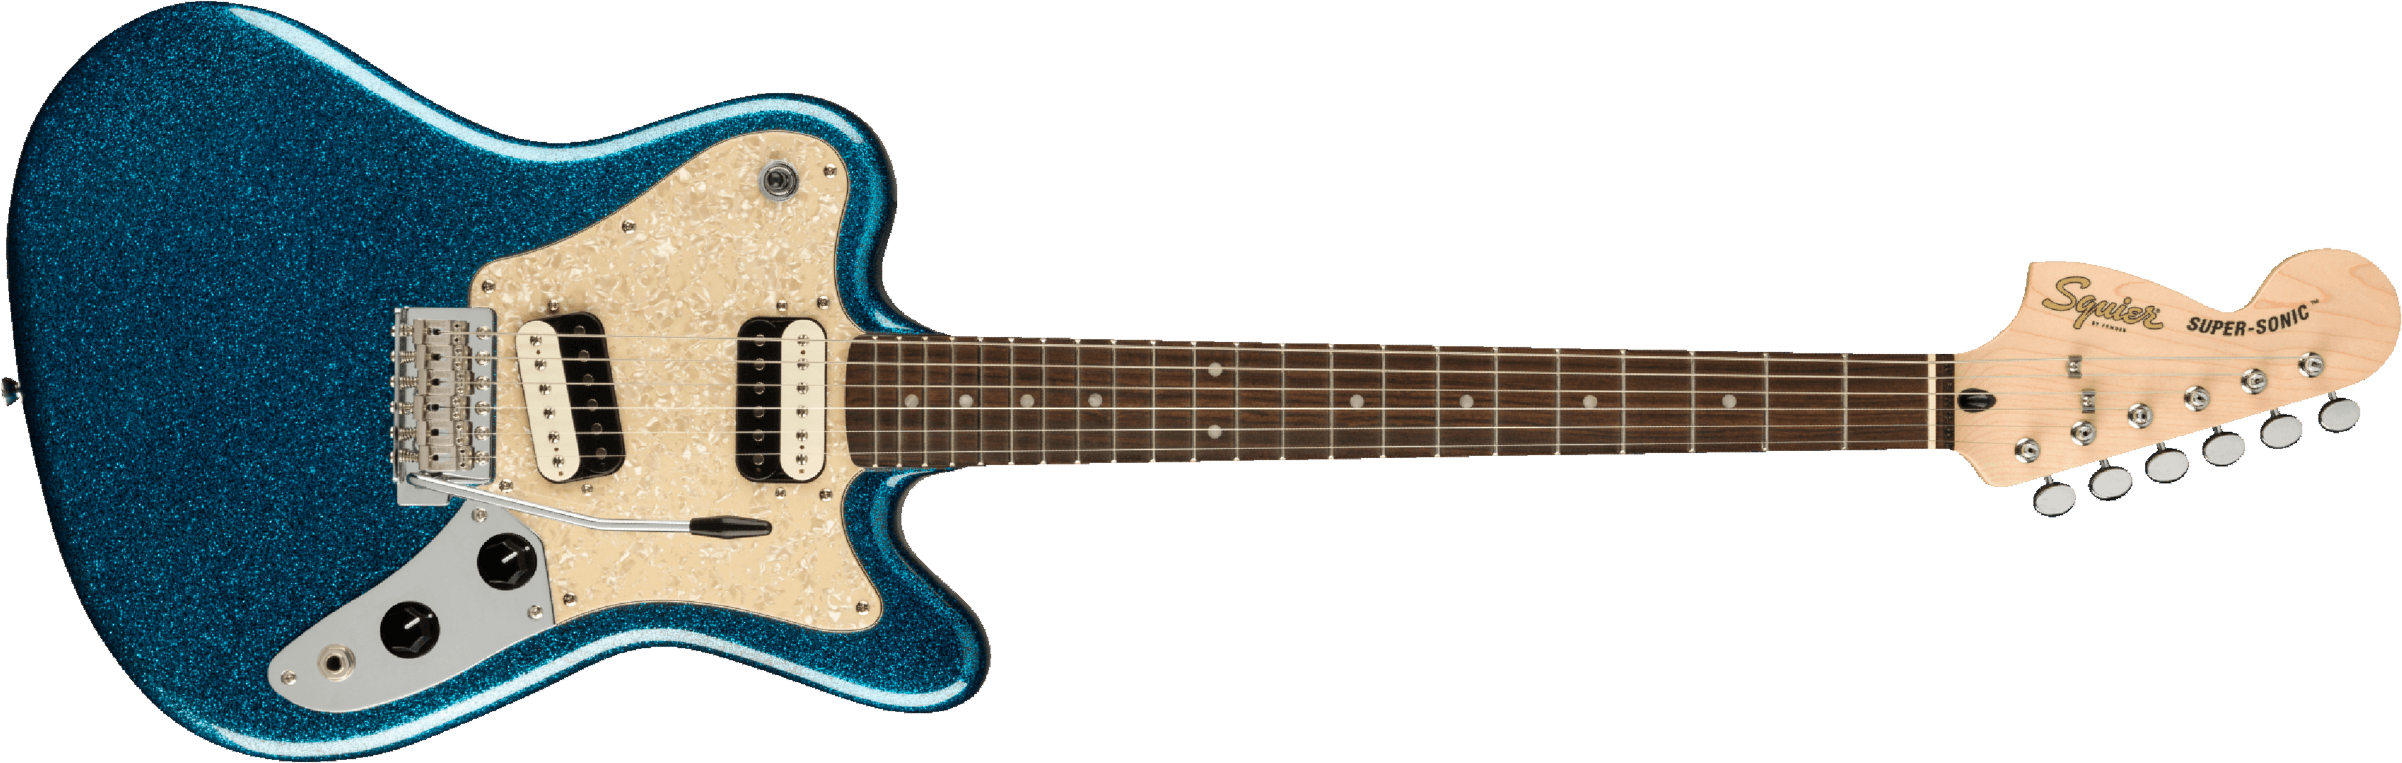 Squier Super-sonic Paranormal Hh Trem Lau - Blue Sparkle - Retro rock electric guitar - Main picture